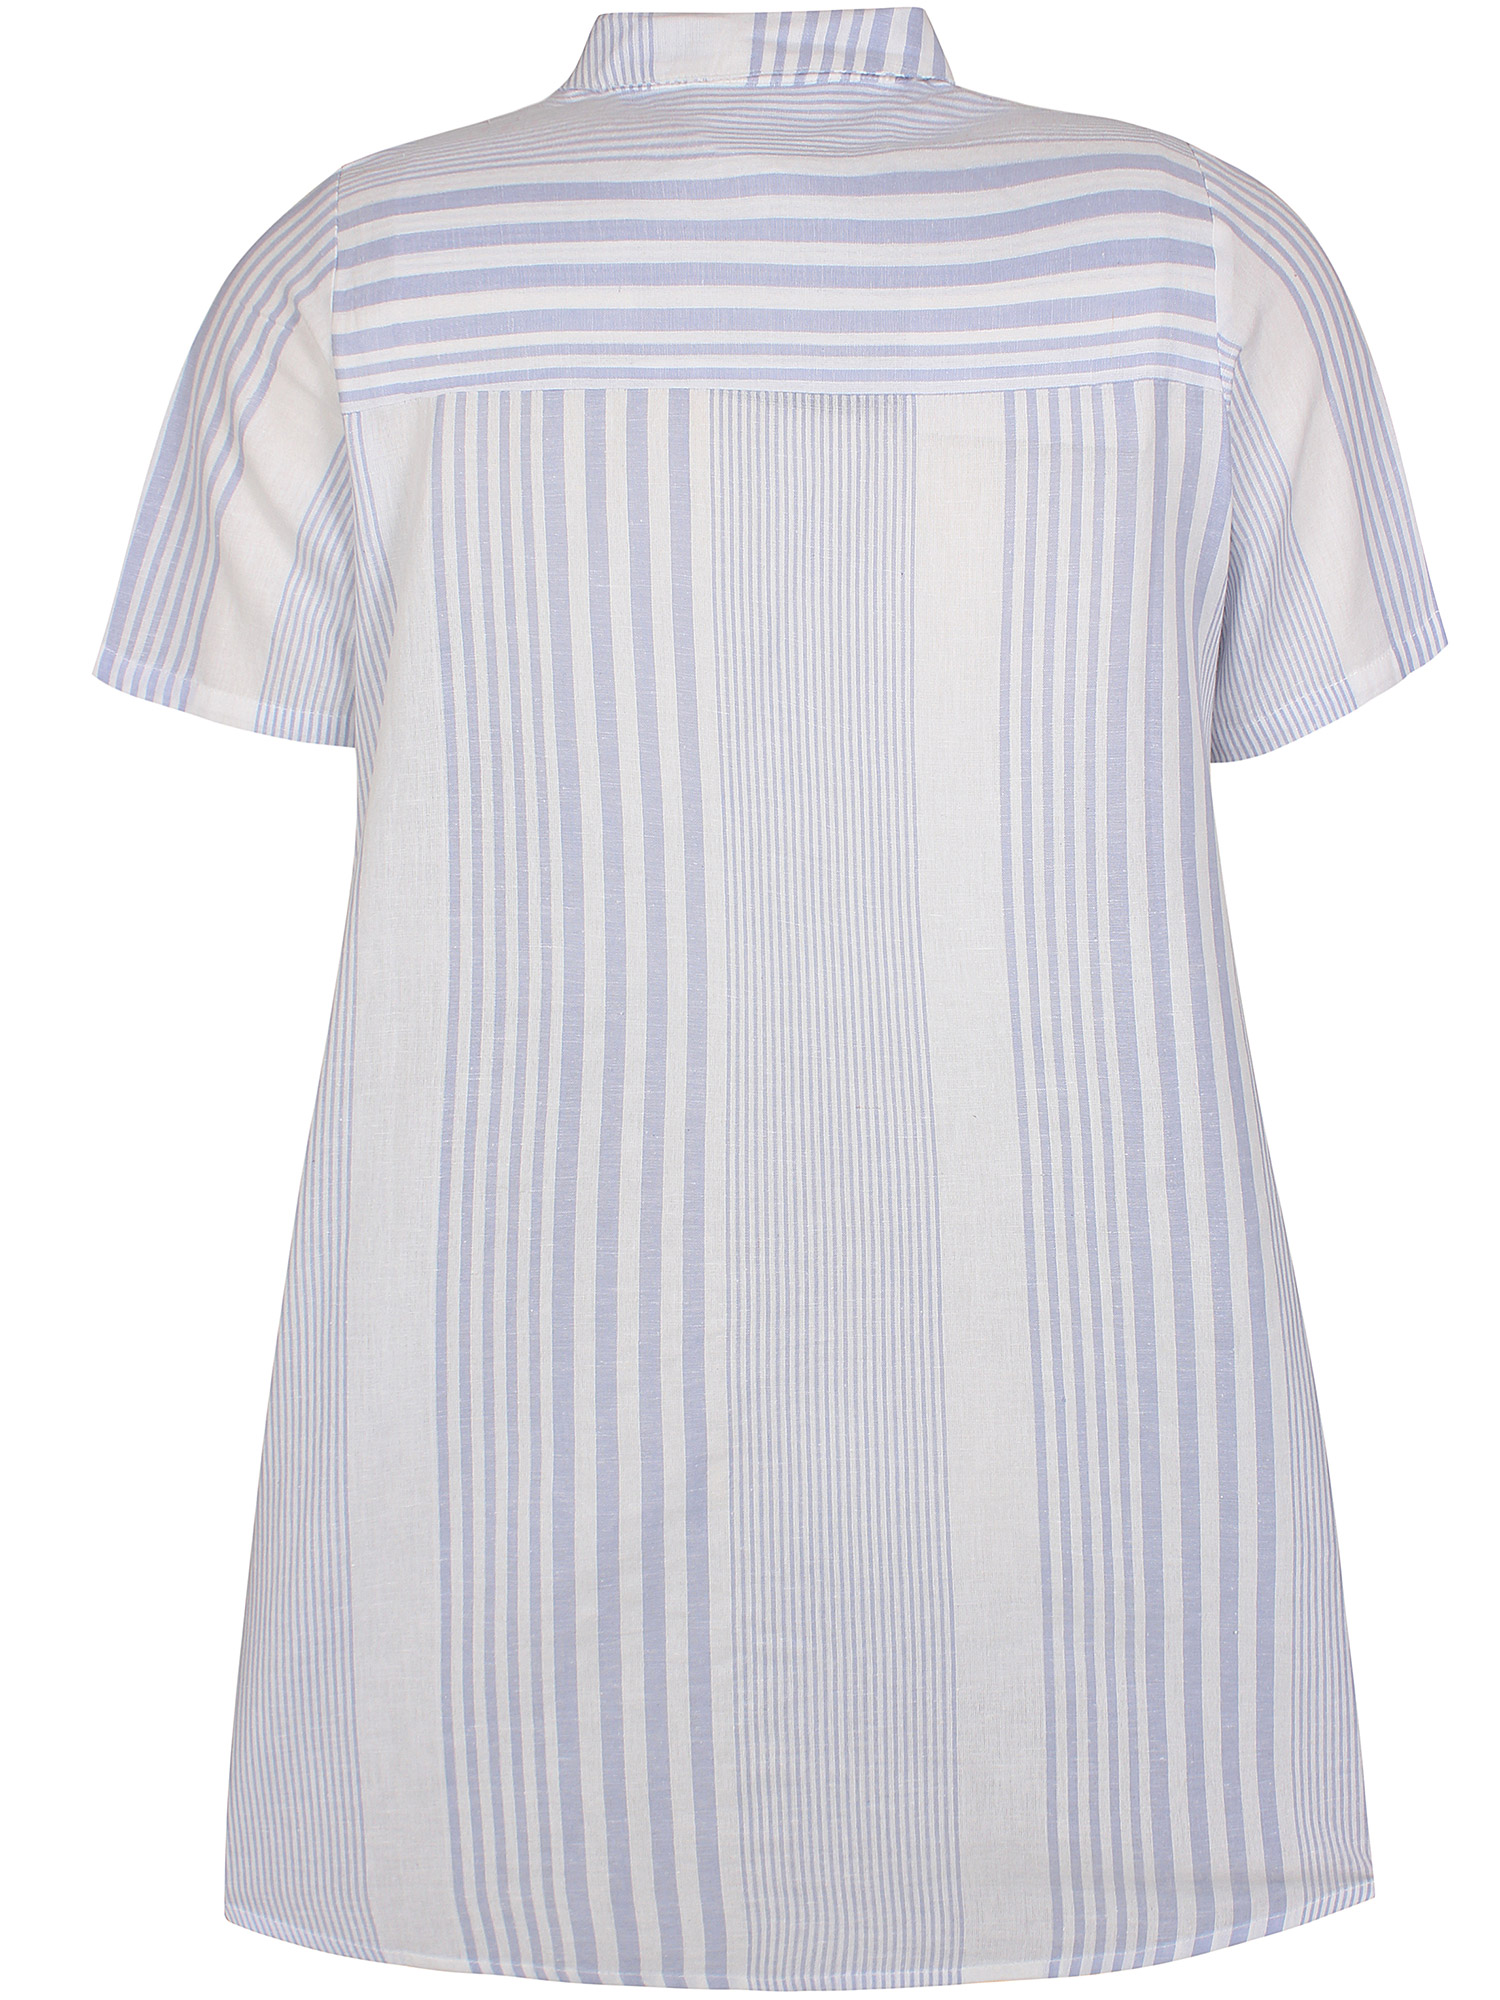 Shara - skjorta i vita och ljusblå ränder fra Zhenzi